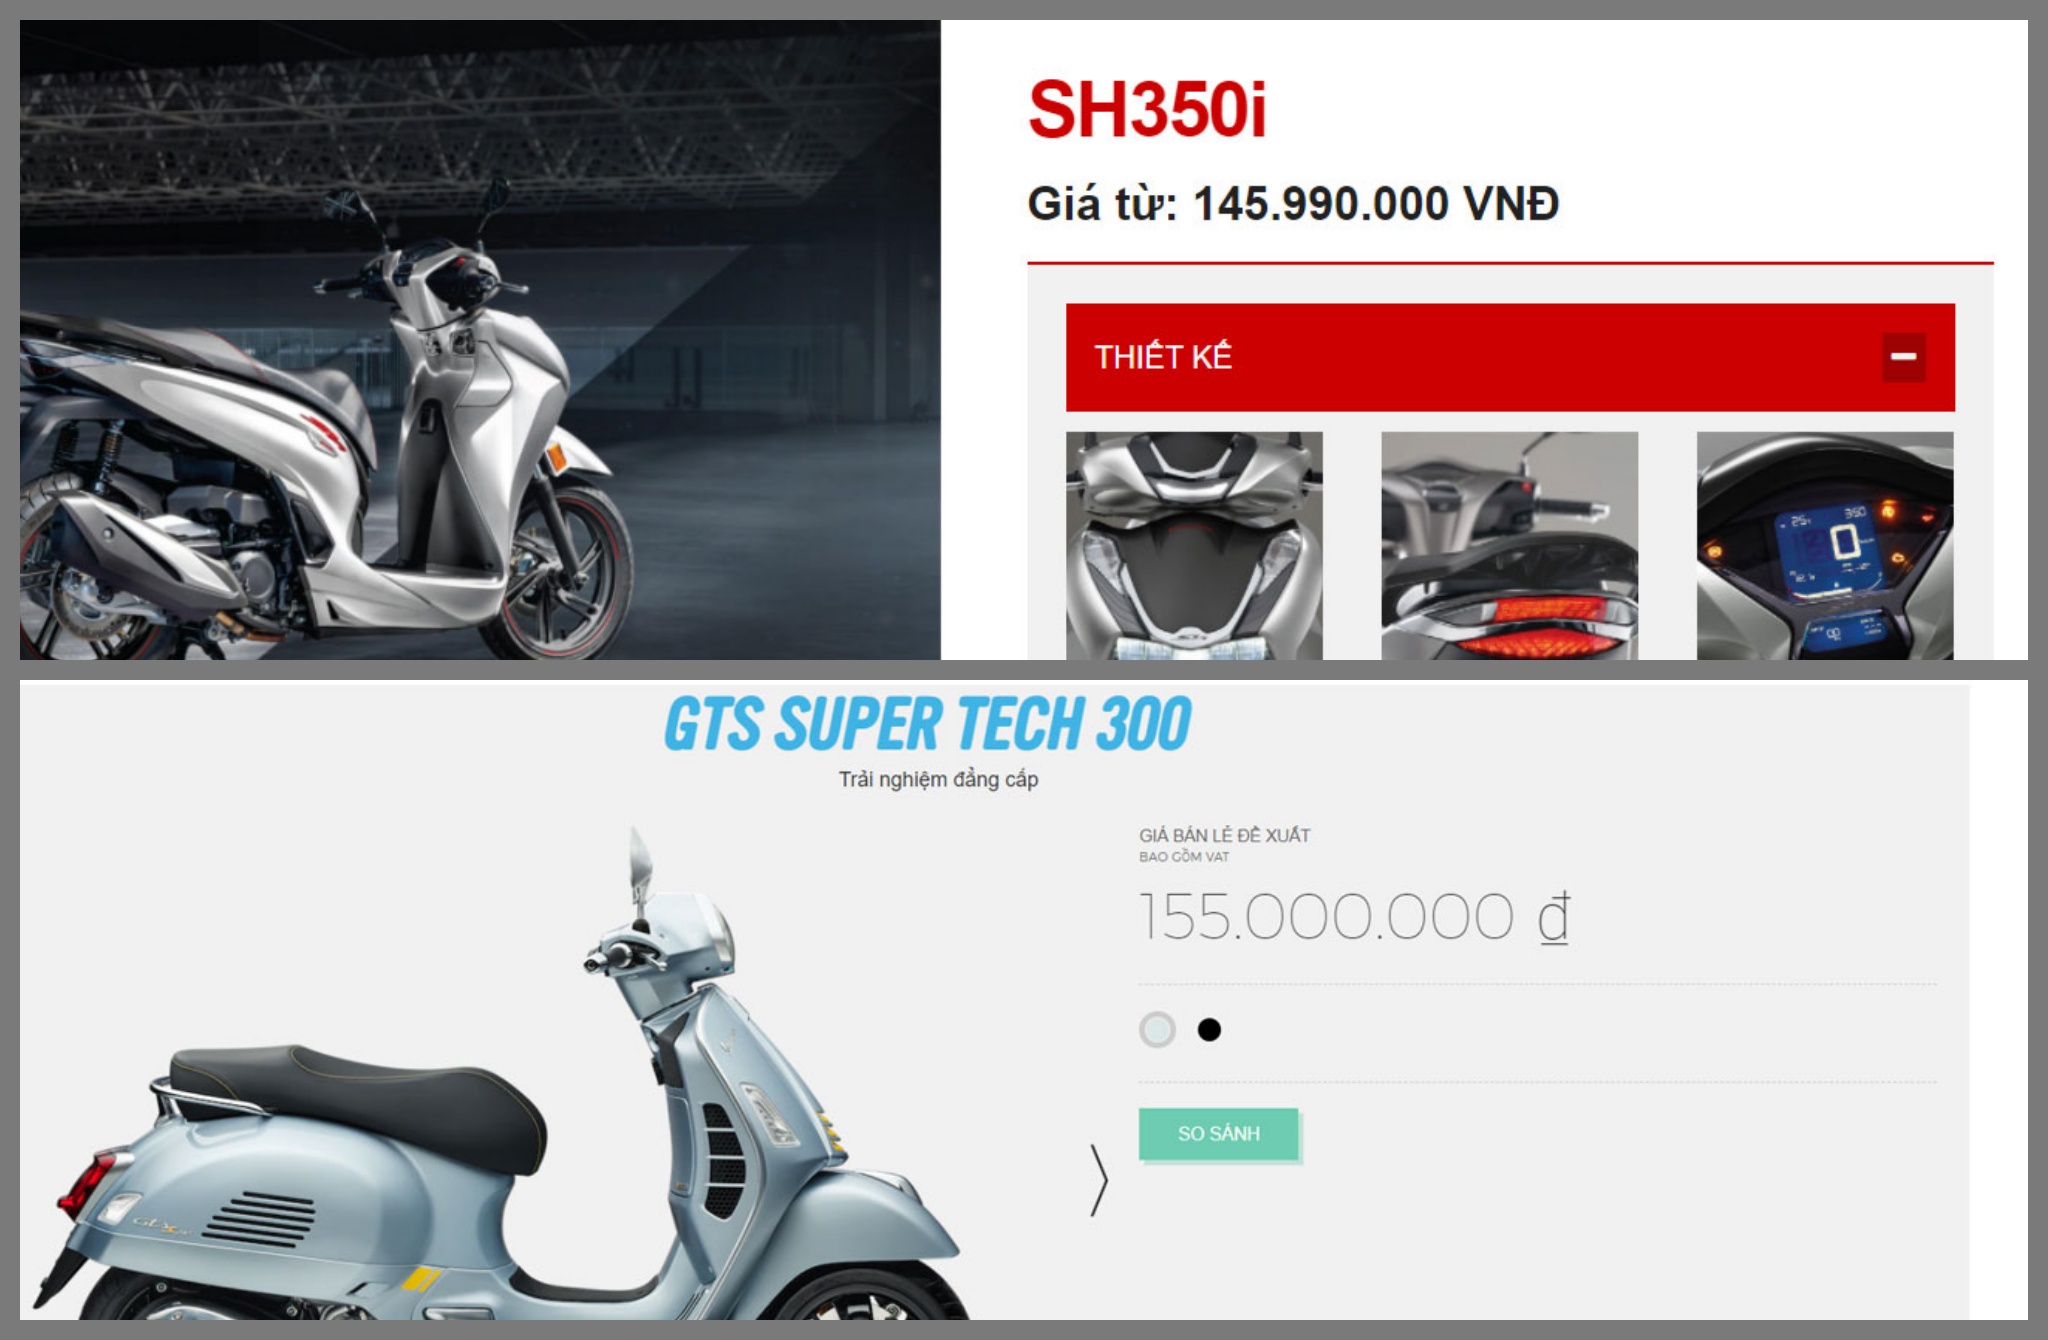 Giá xe Honda SH350i so với Vespa GTS